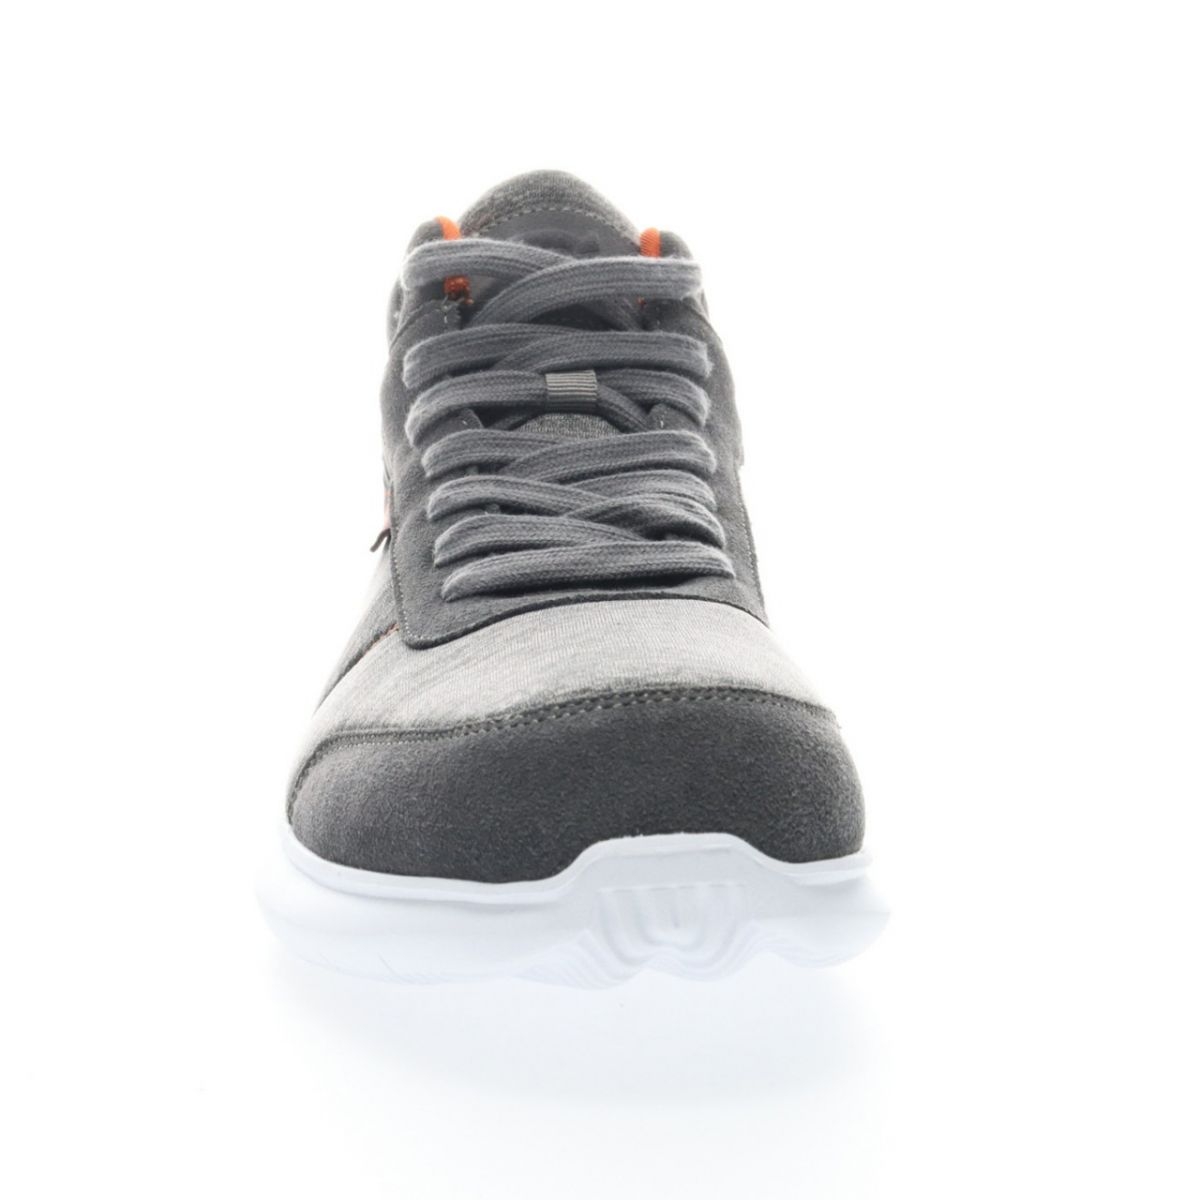 Propet Men's Viator Hi Sneaker Grey/Orange - MAA112MGOR Grey/orange - Grey/orange, 11 X-Wide